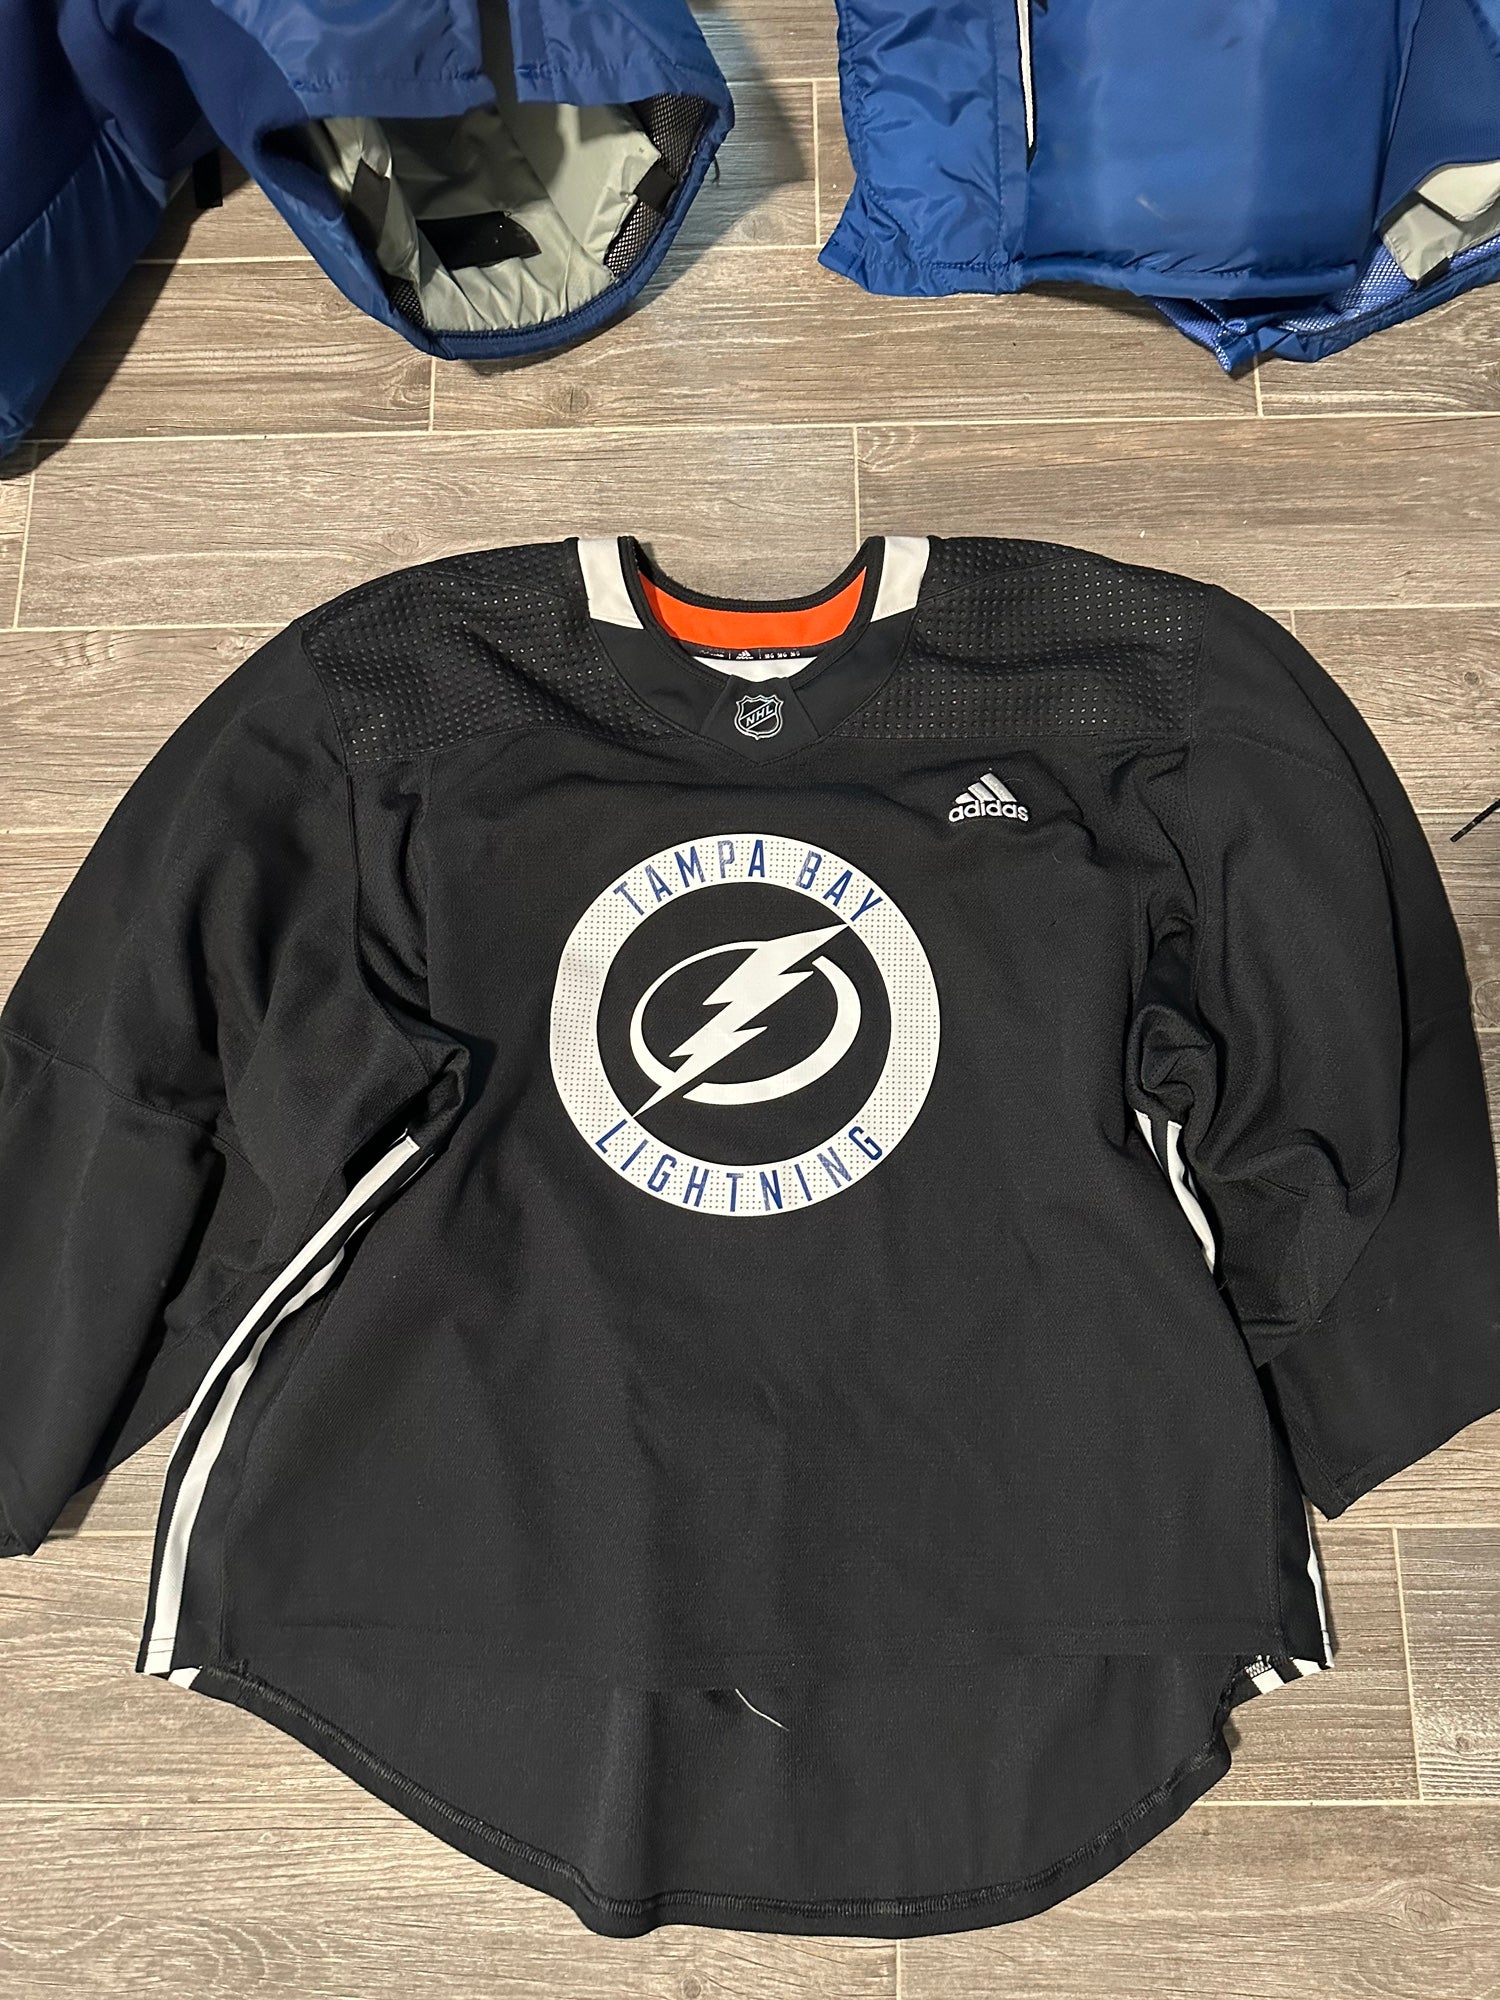 Tampa Bay Lightning Gear, Lightning Jerseys, Tampa Pro Shop, Tampa Apparel